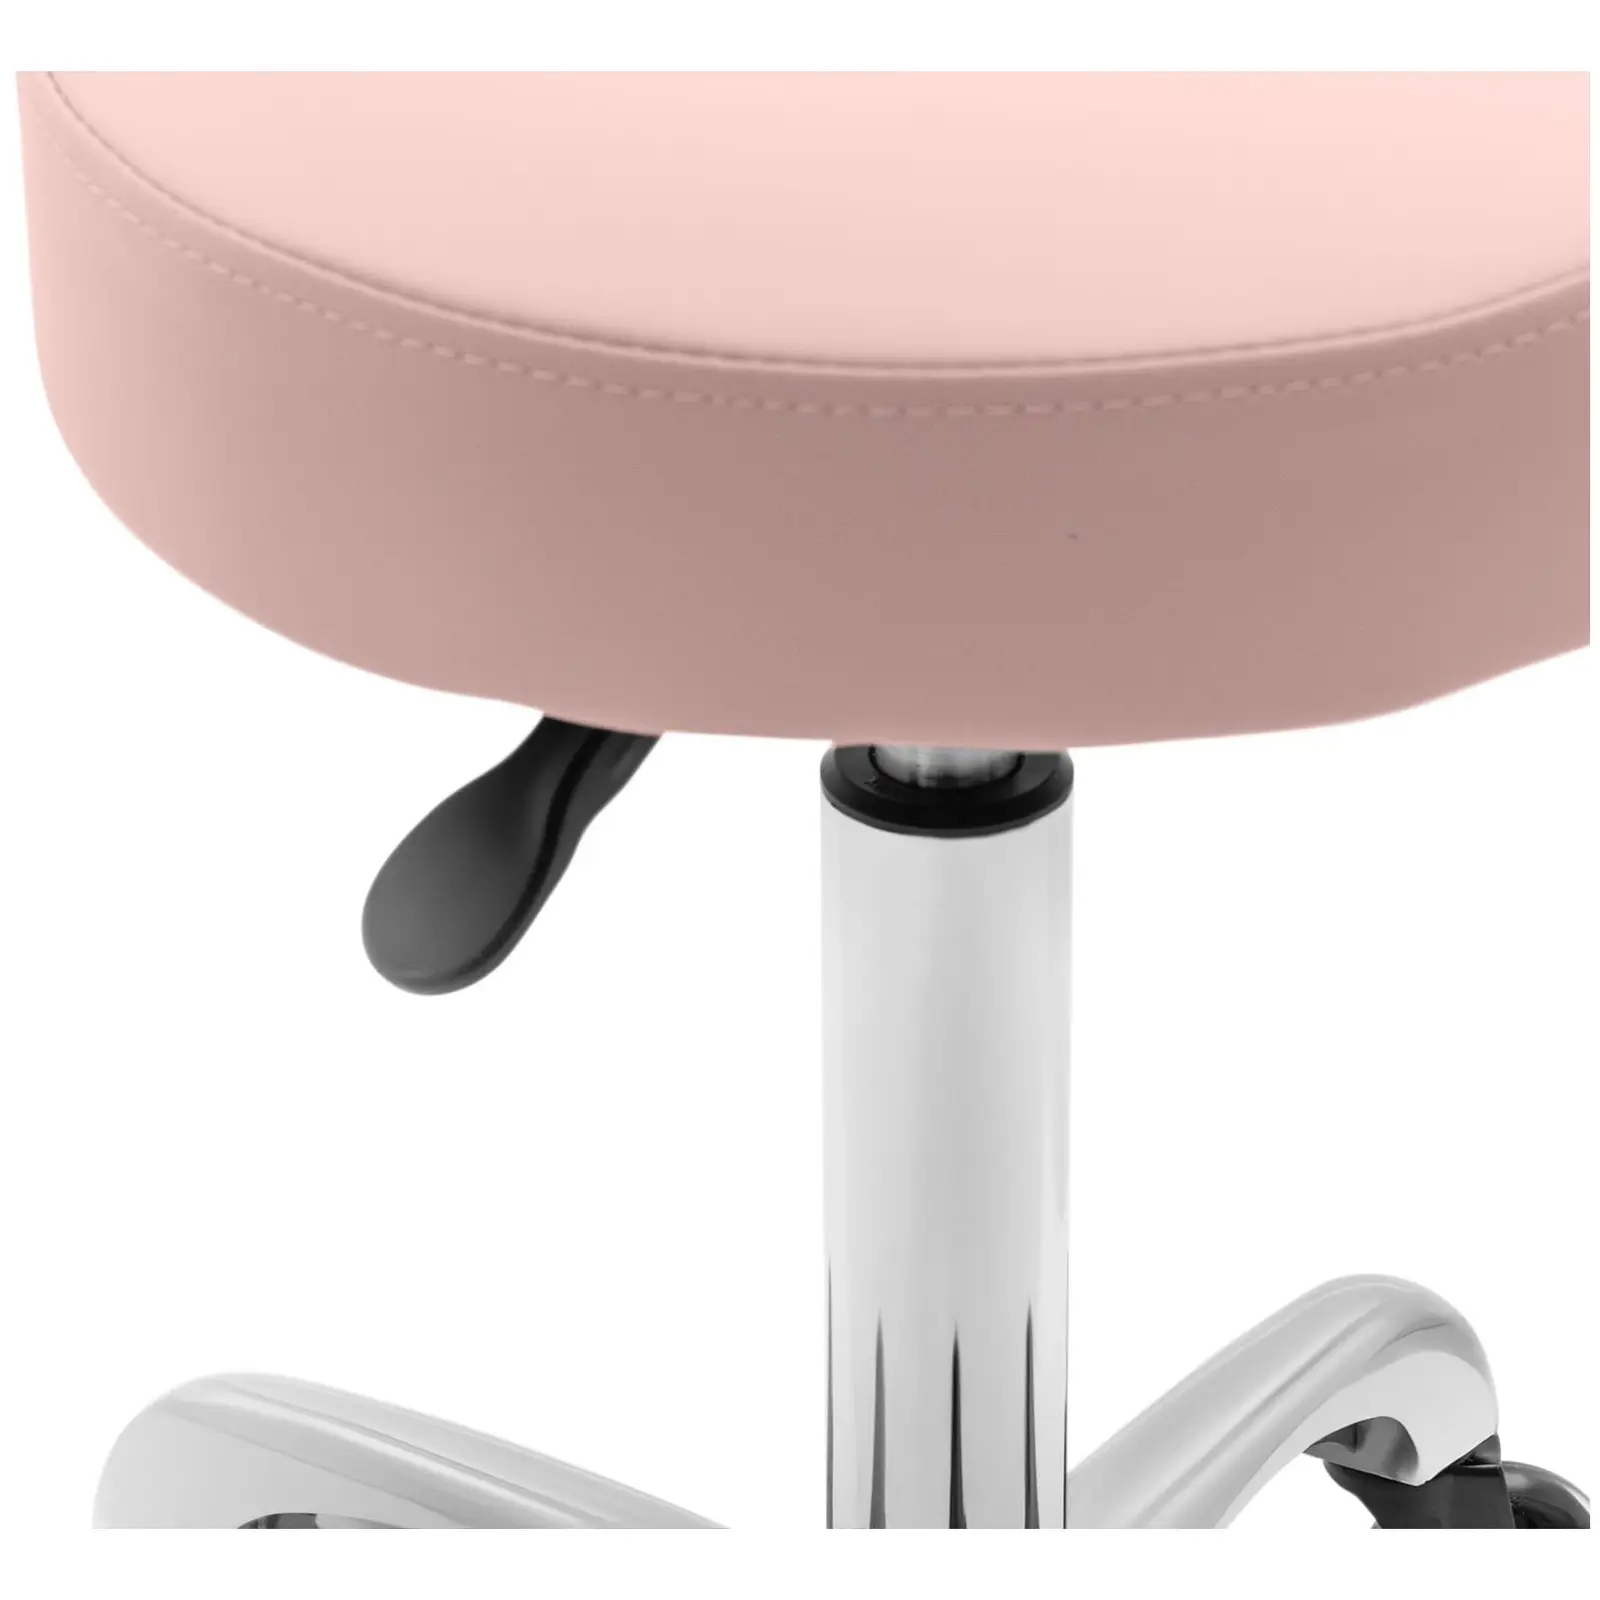 Beauty gauč a pojízdná stolička s opěradlem - růžová, bílá